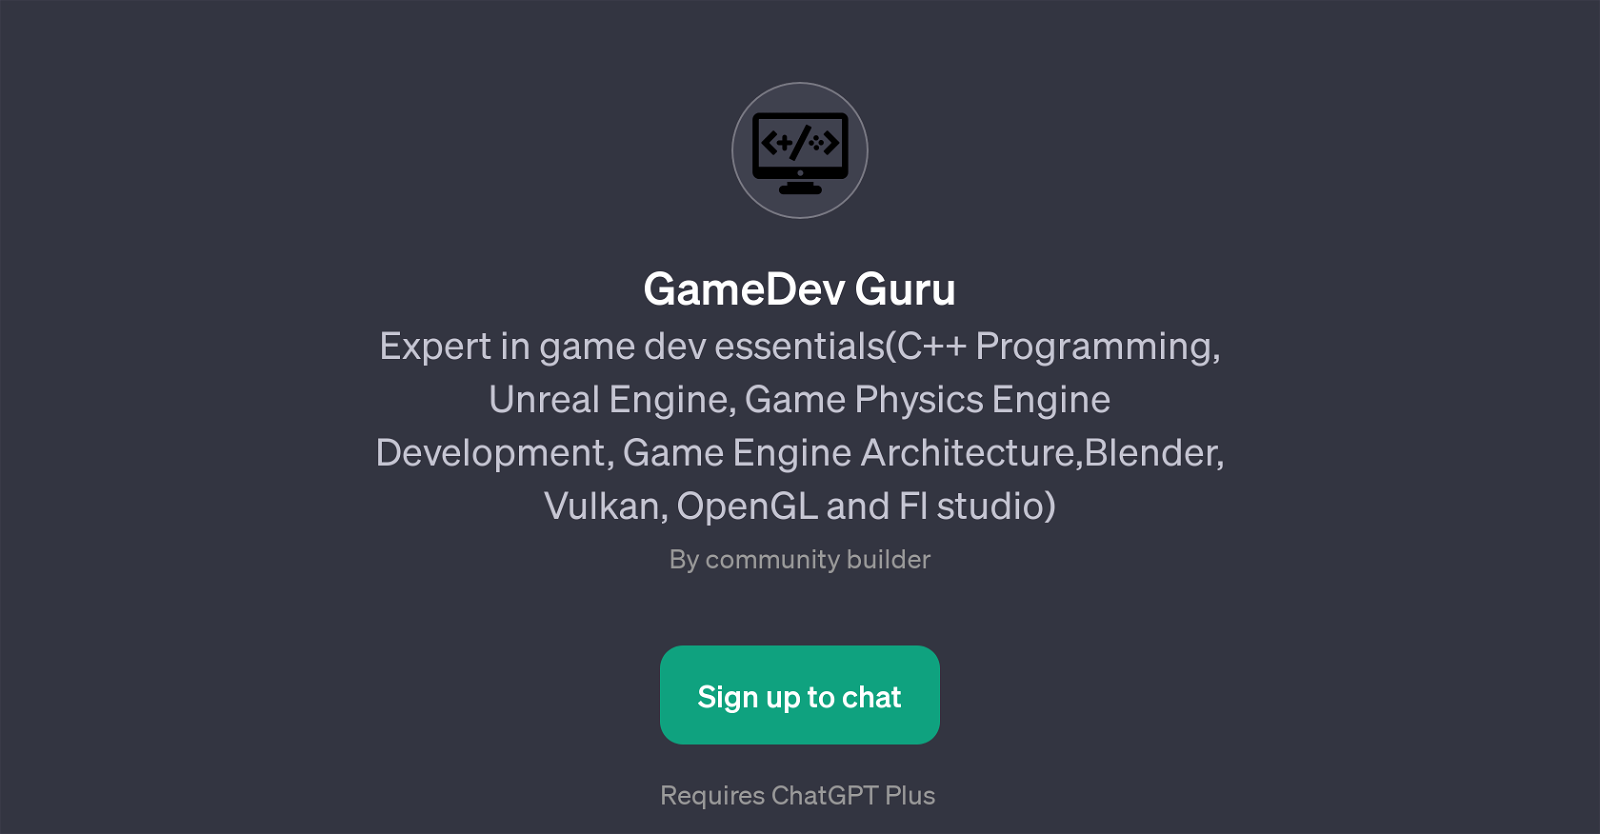 GameDev Guru website